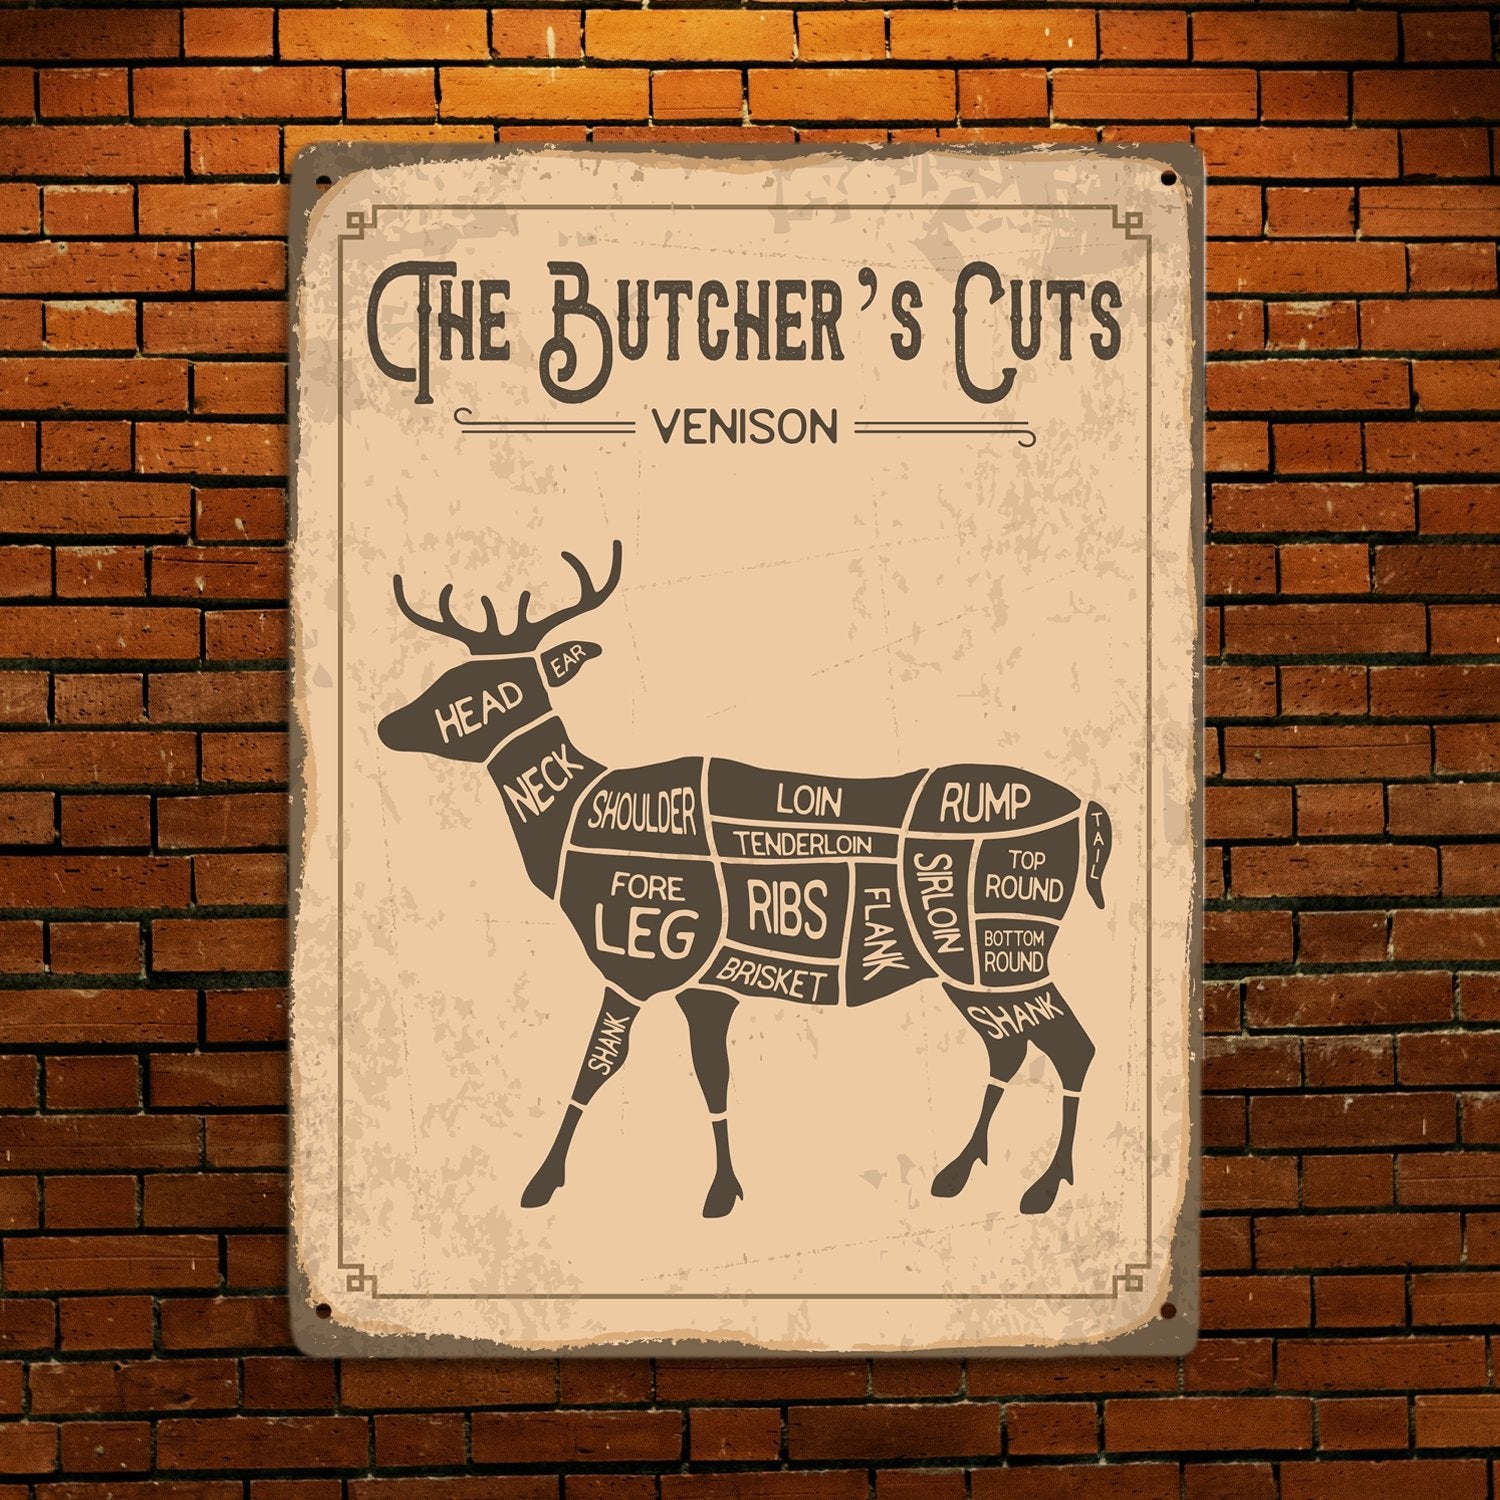 The Butcher's Cut's Venison, Metal Signs